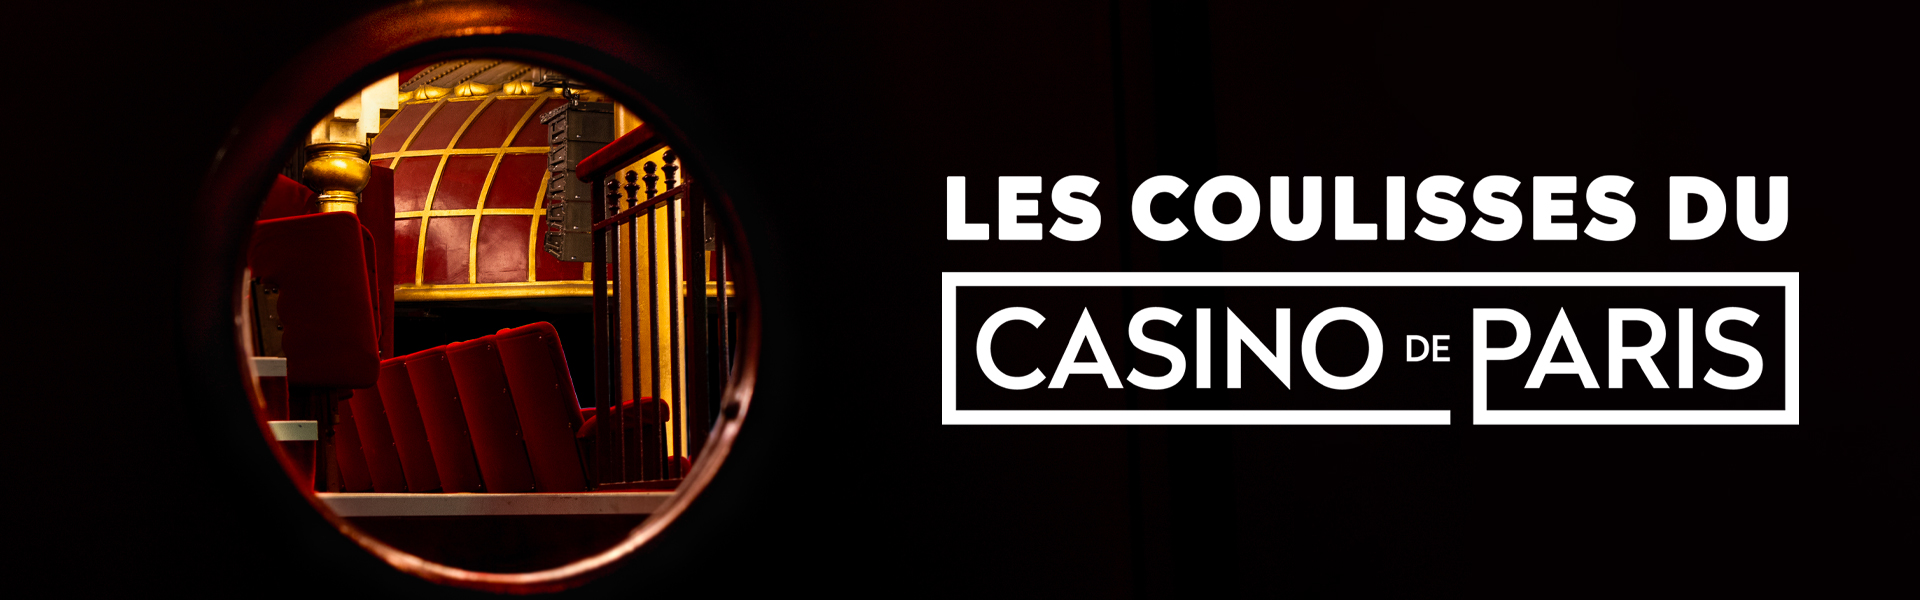 Les Coulisses du Casino de Paris